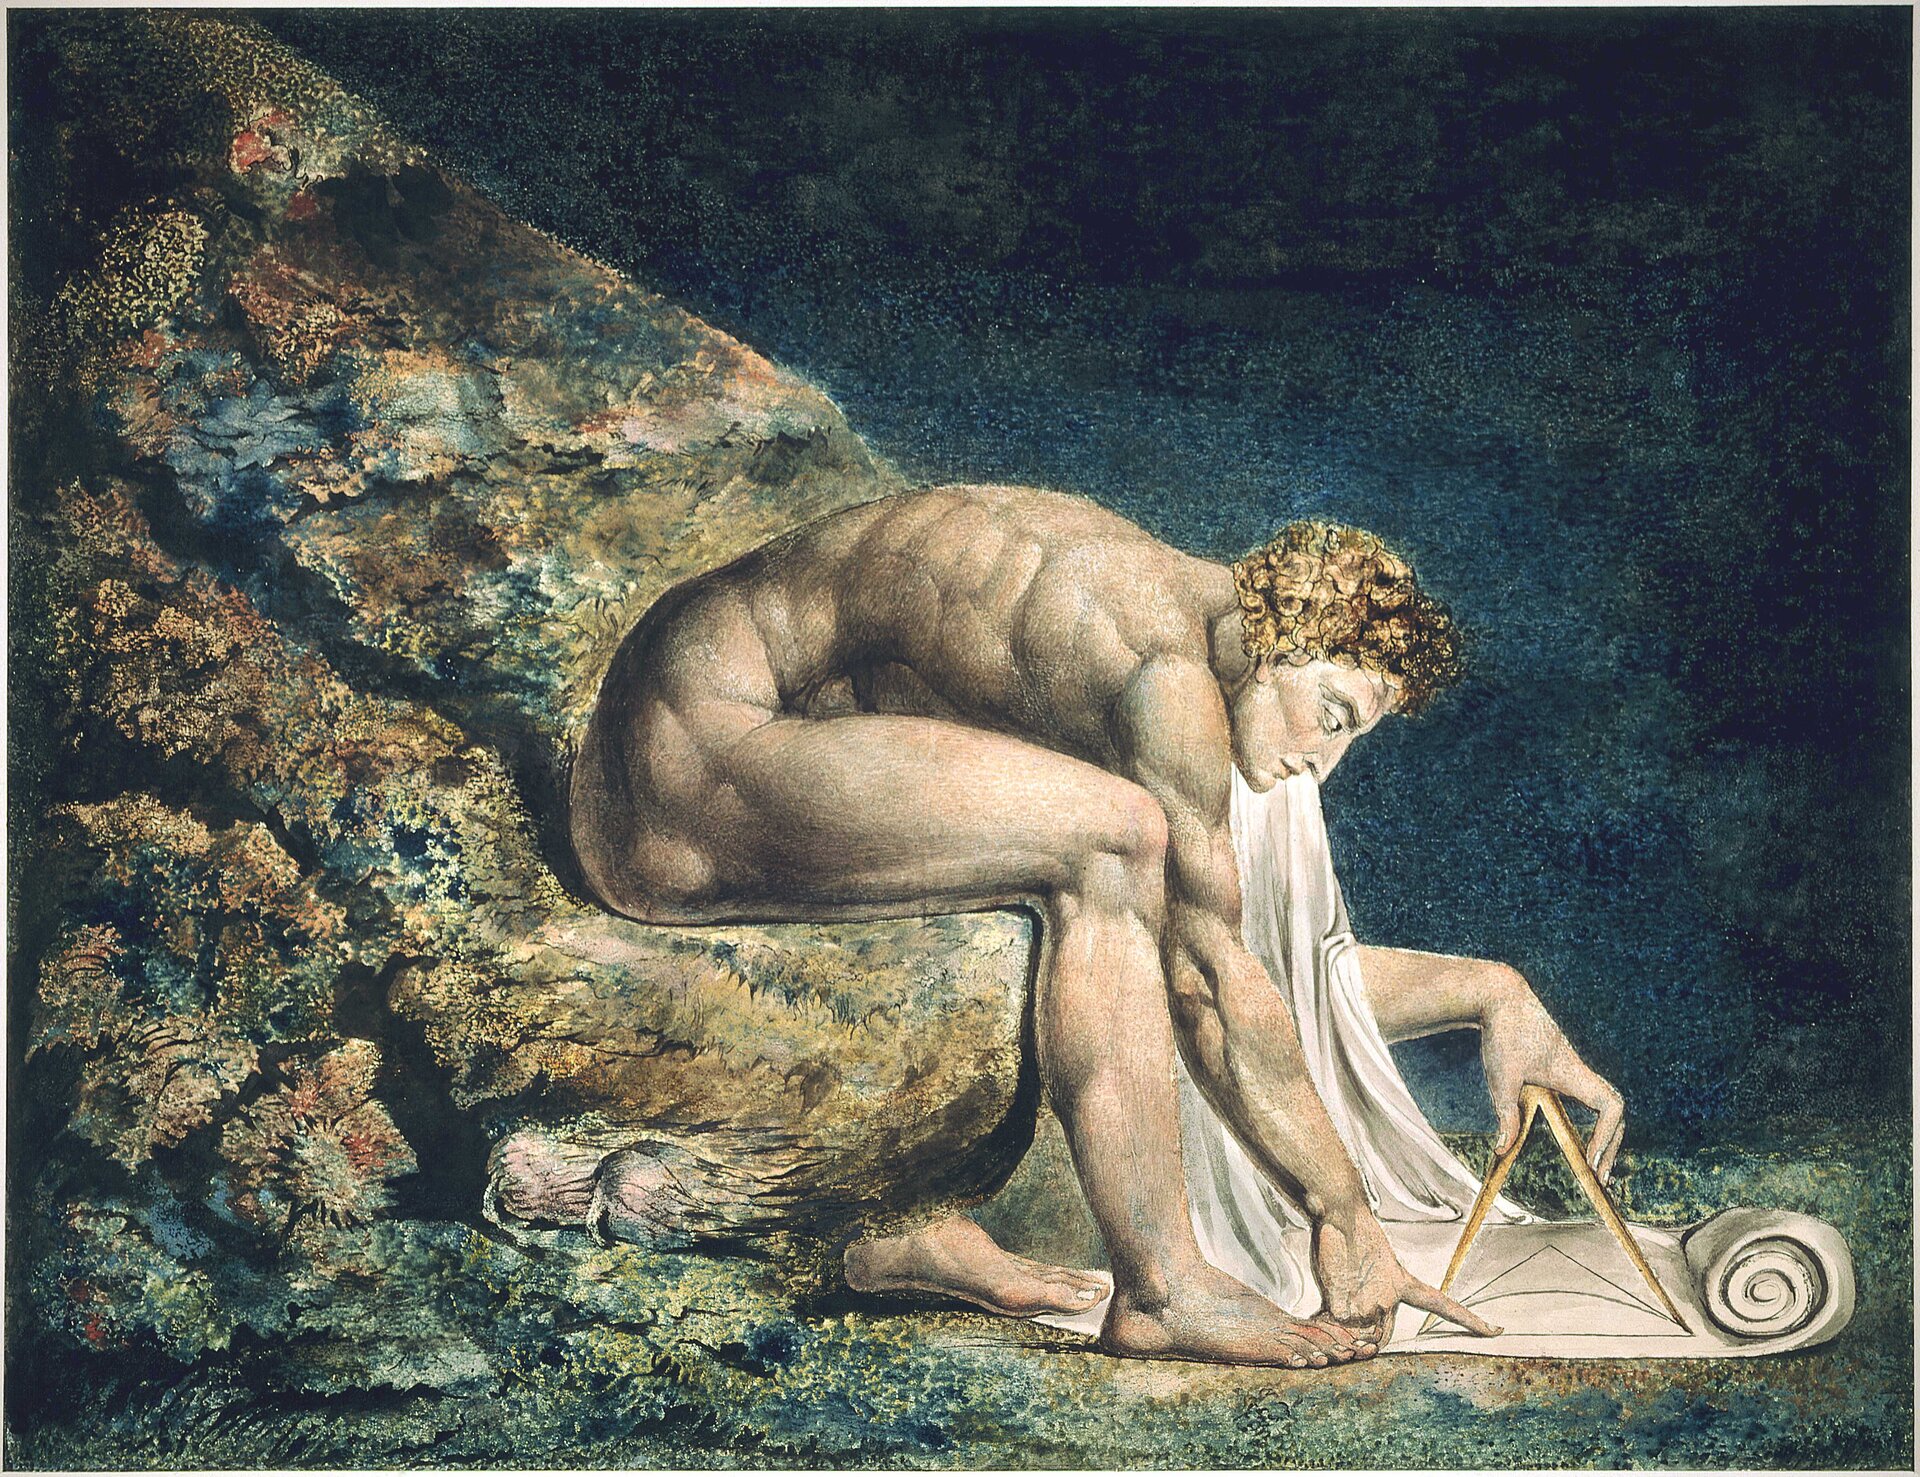 Ilustracja interaktywna o kształcie poziomego prostokąta przedstawia obraz Williama Blake’a „Newton”. Przedstawia ujętego z profilu, nagiego, umięśnionego mężczyznę, który siedzi na zboczu pokrytym glonami. Newton pochyla się nad zwojem   papieru i kreśli na nim cyrklem. Tło stanowi granatowa głębia morza. 